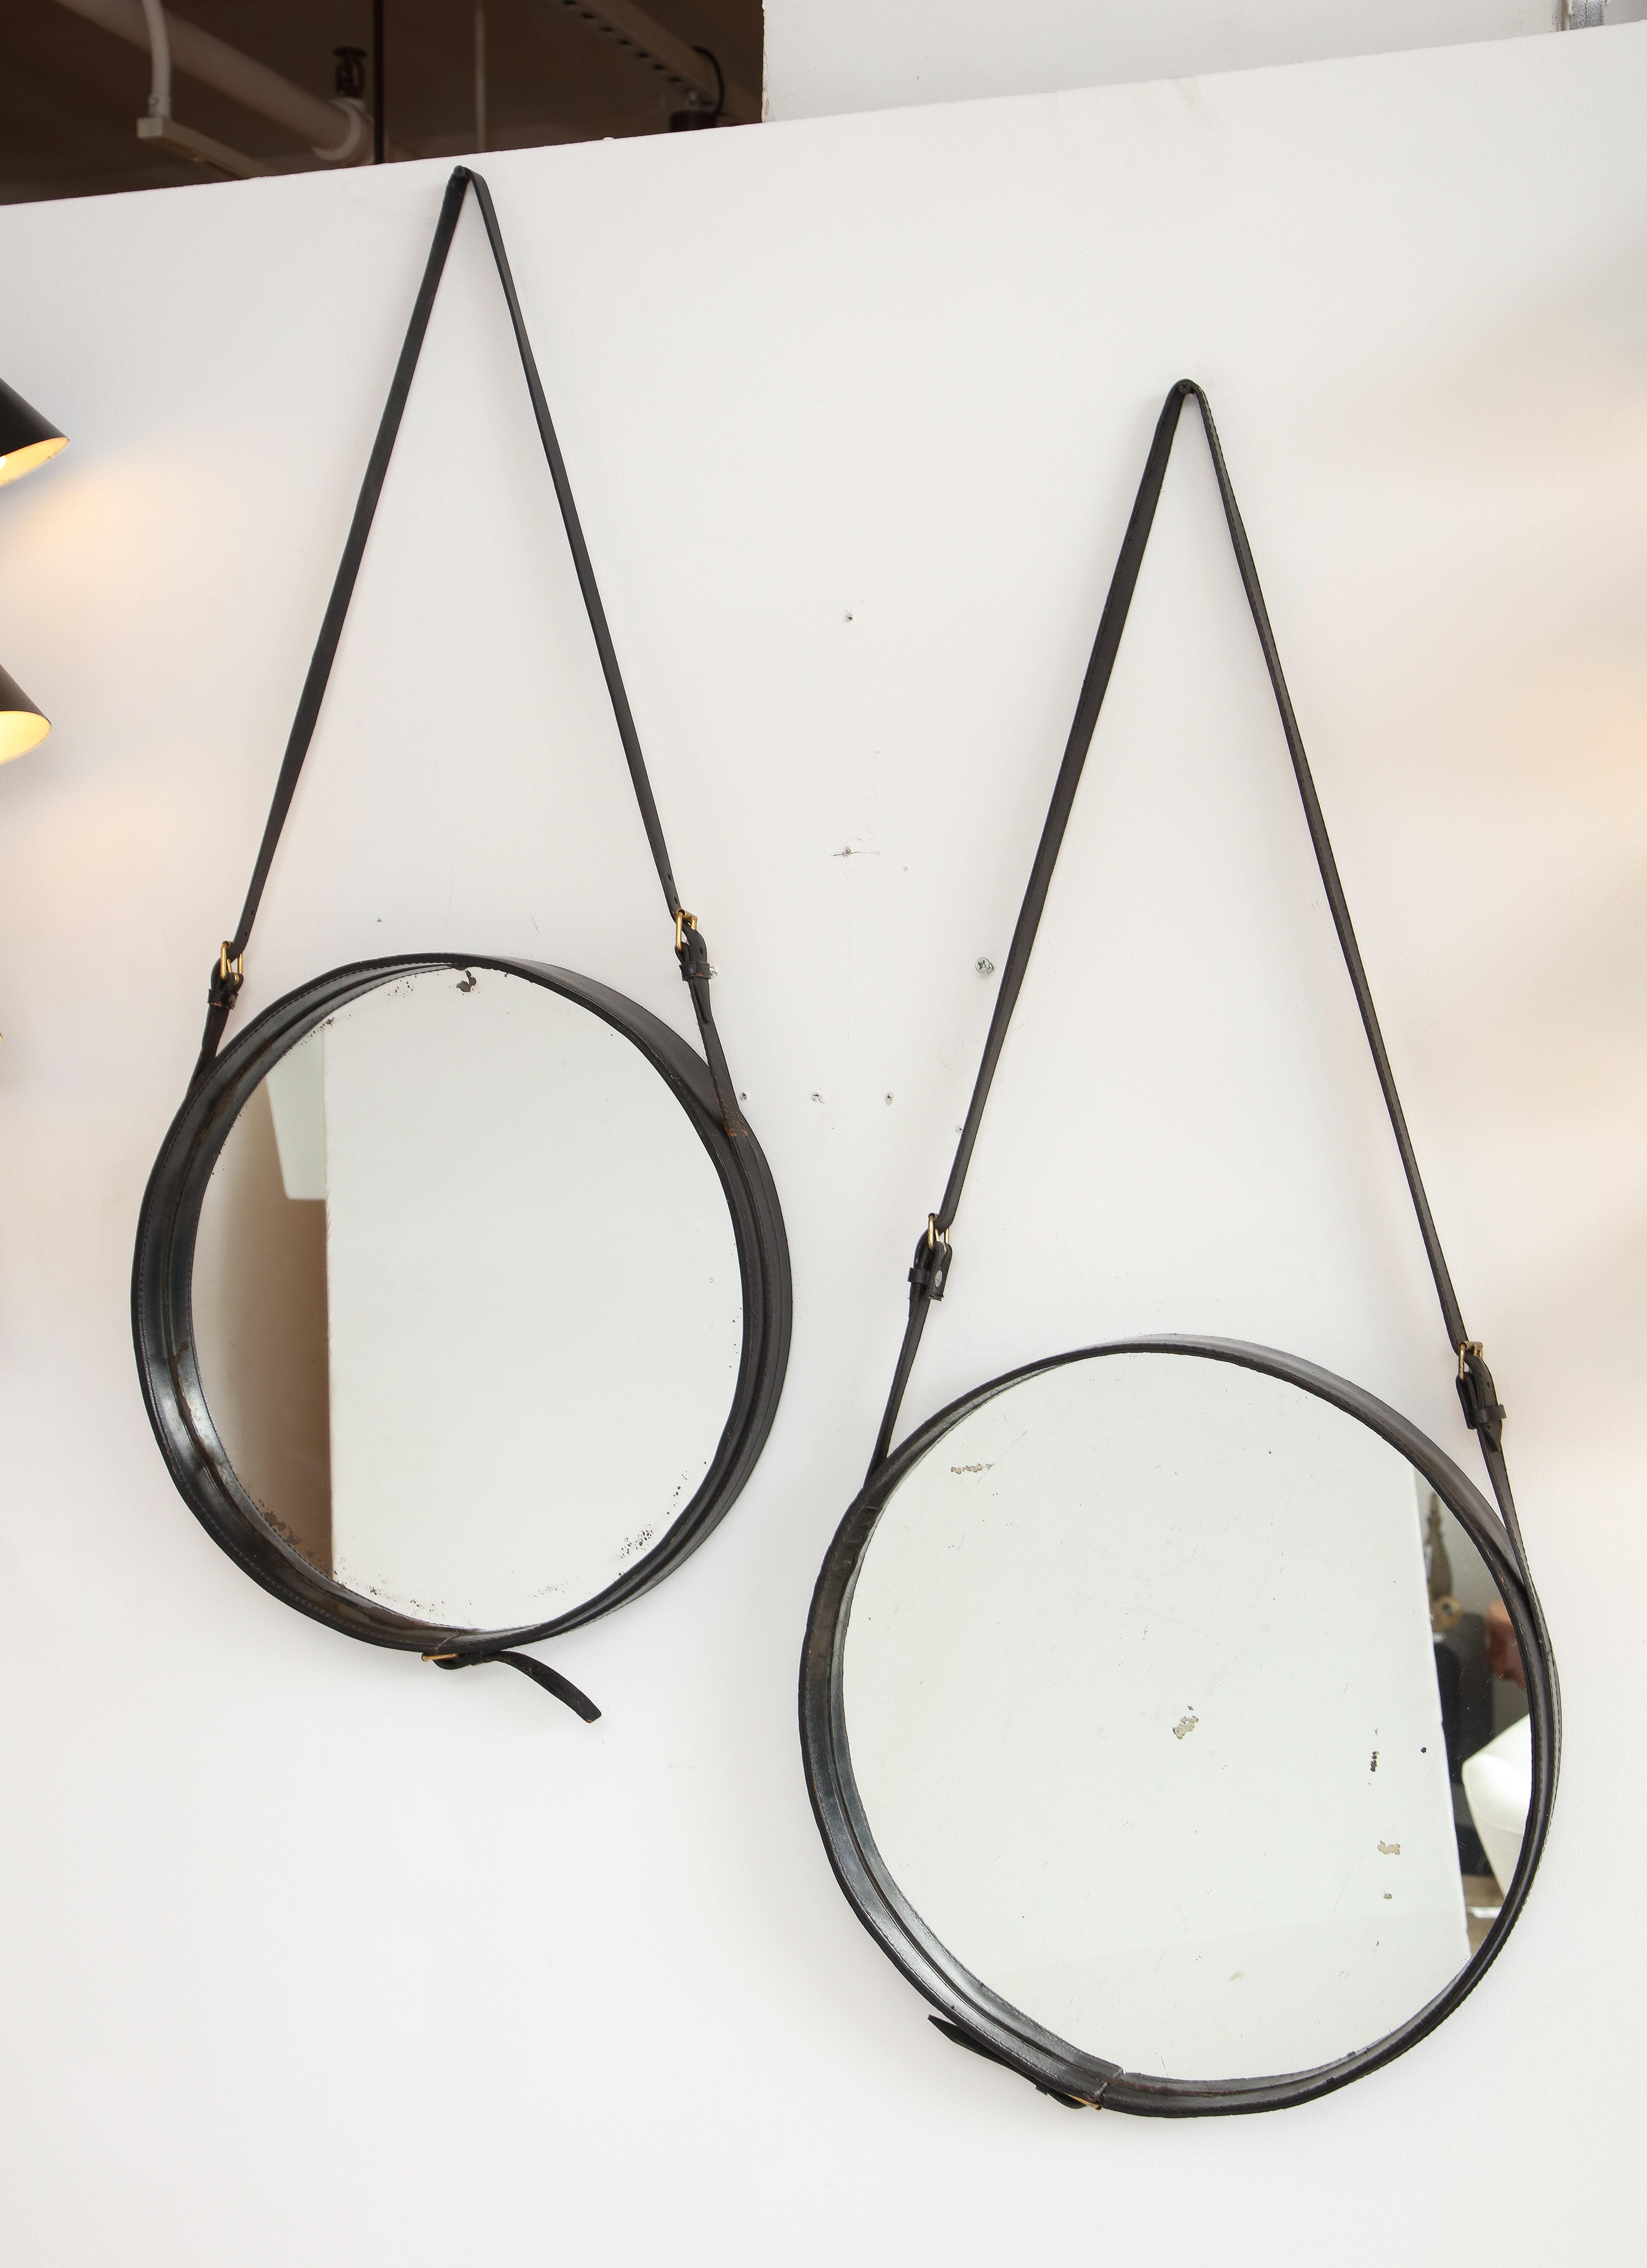 Jacques Adnet, rare paire de miroirs muraux ronds habillés de cuir noir avec des sangles réglables et des verres miroirs d'origine, France, années 1950. Ces miroirs sont restés dans leur état d'origine et en très bon état, sans dommages ou